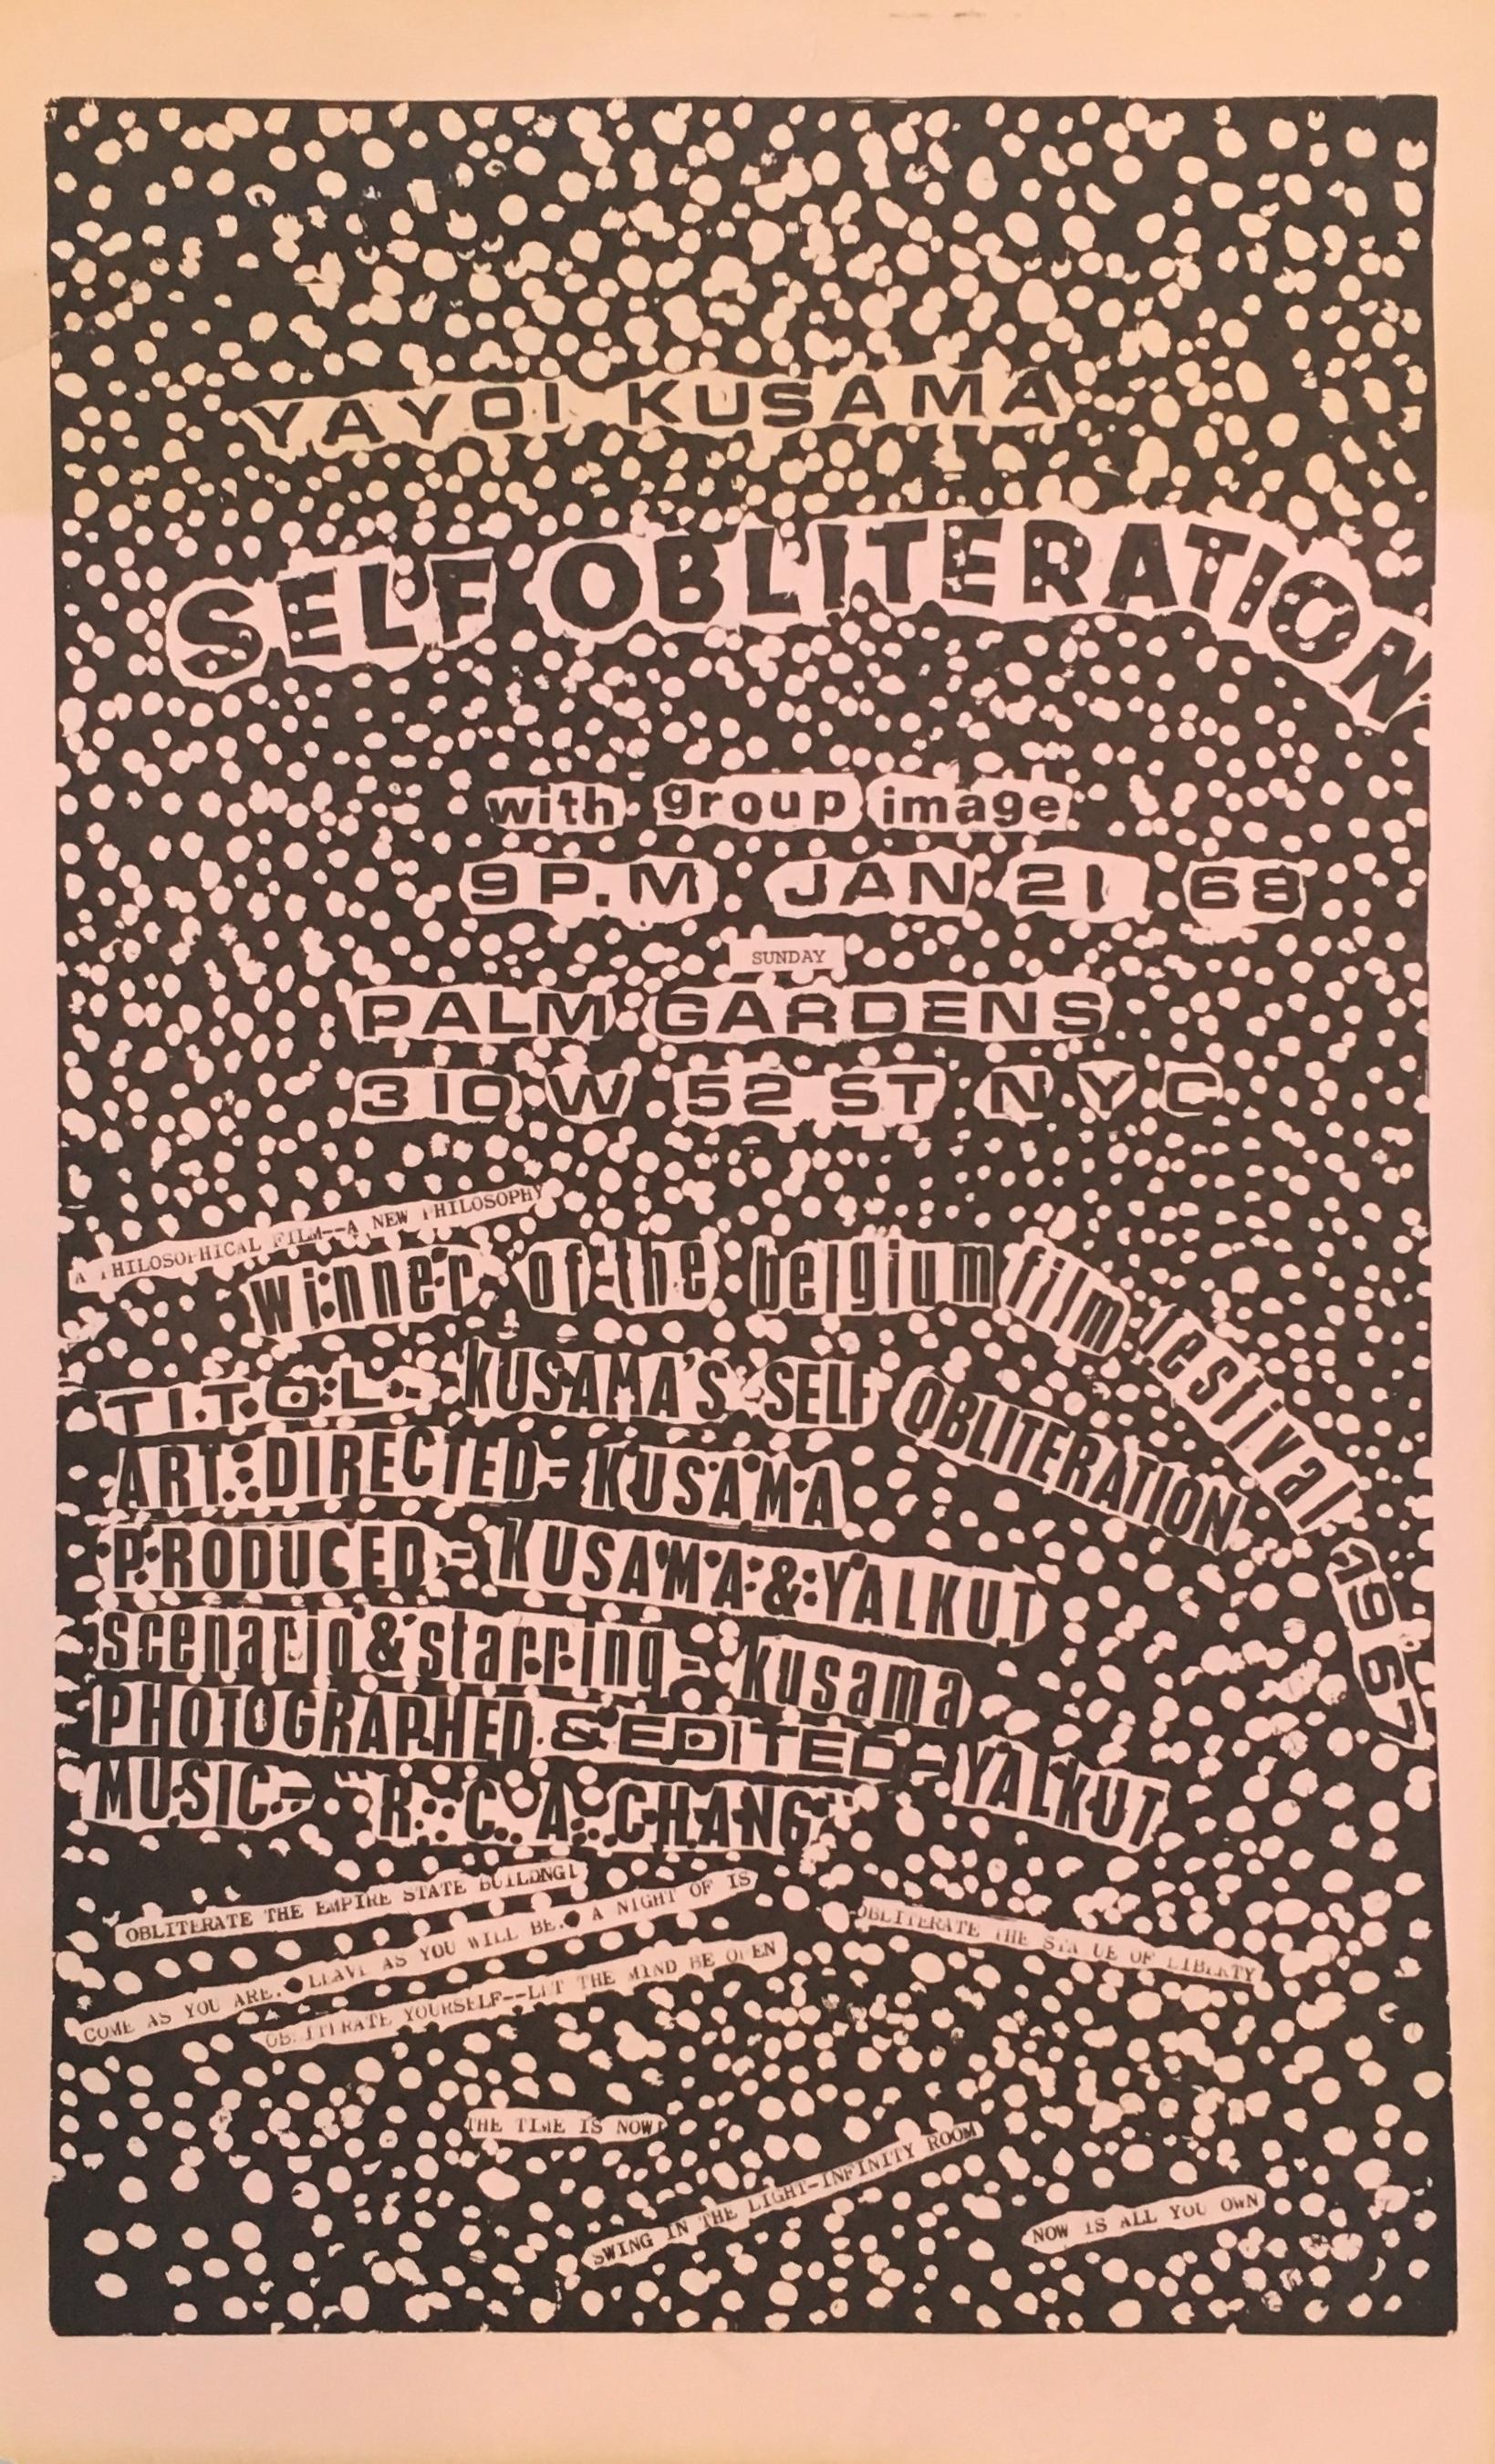 Kusama Self Obliteration (announcement) - Print by Yayoi Kusama